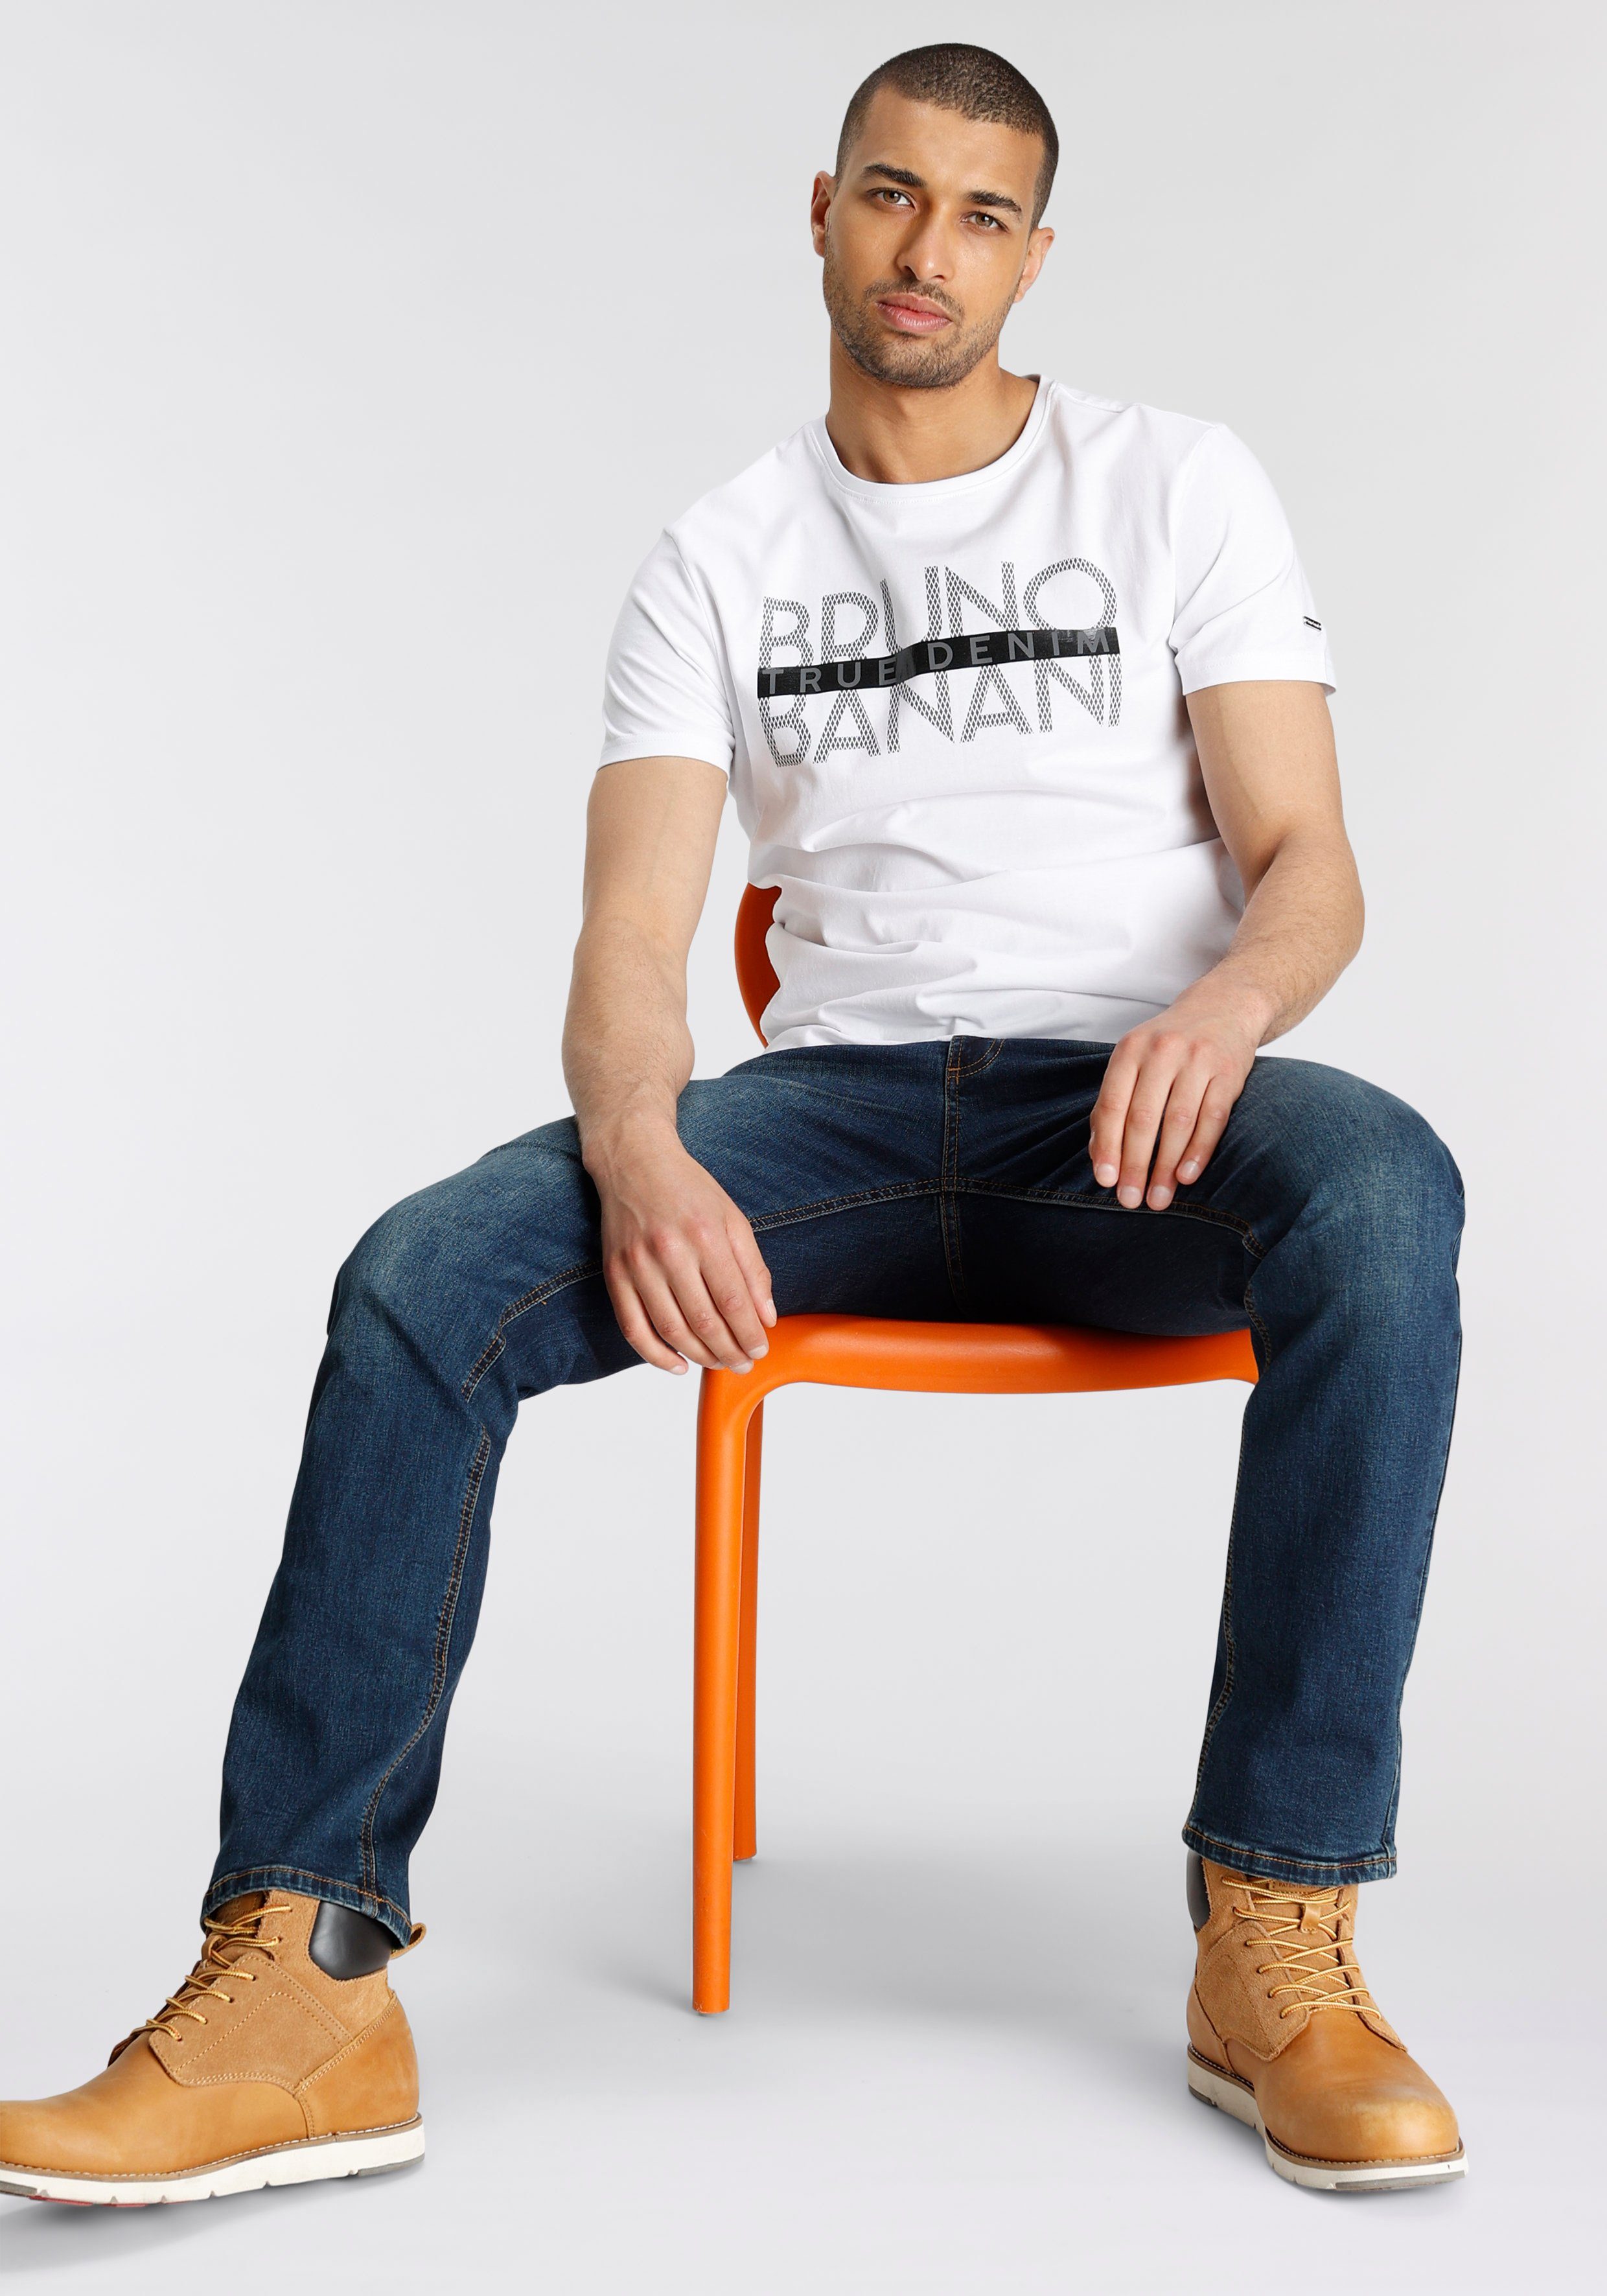 Bruno T-Shirt glänzendem mit Banani Print weiß